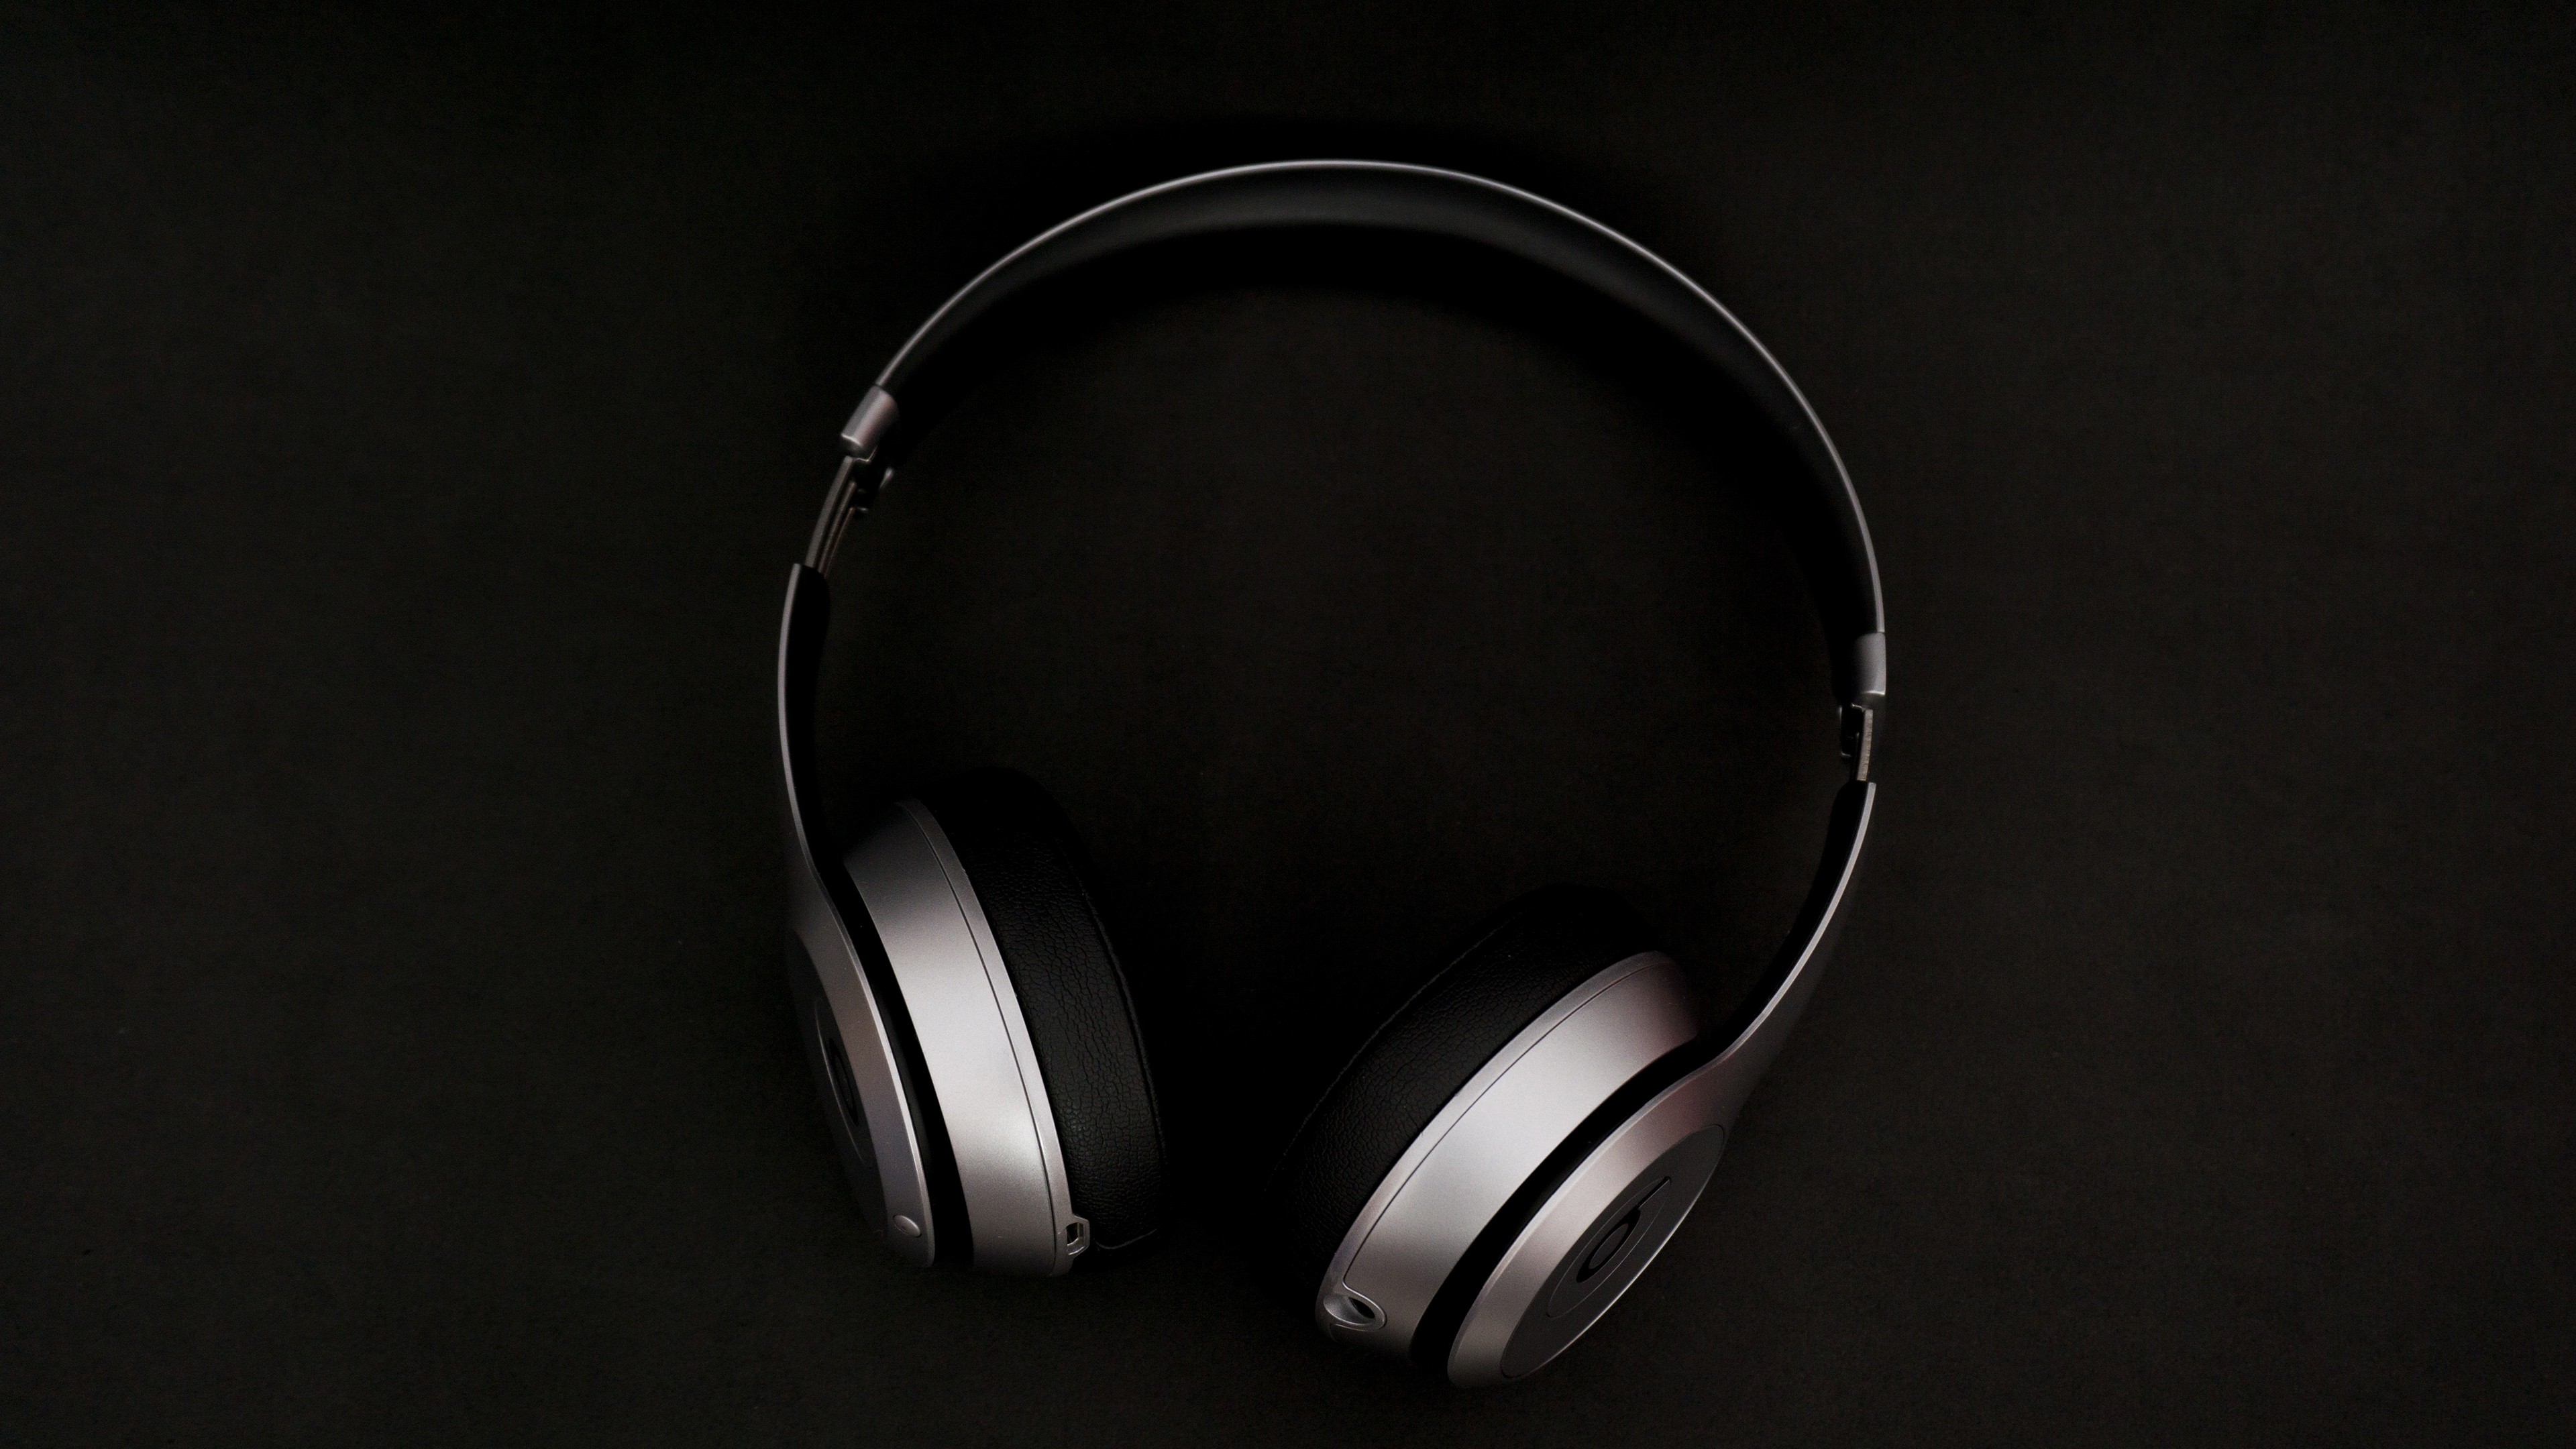 headphones wallpaper,headphones,gadget,audio equipment,headset,electronic device